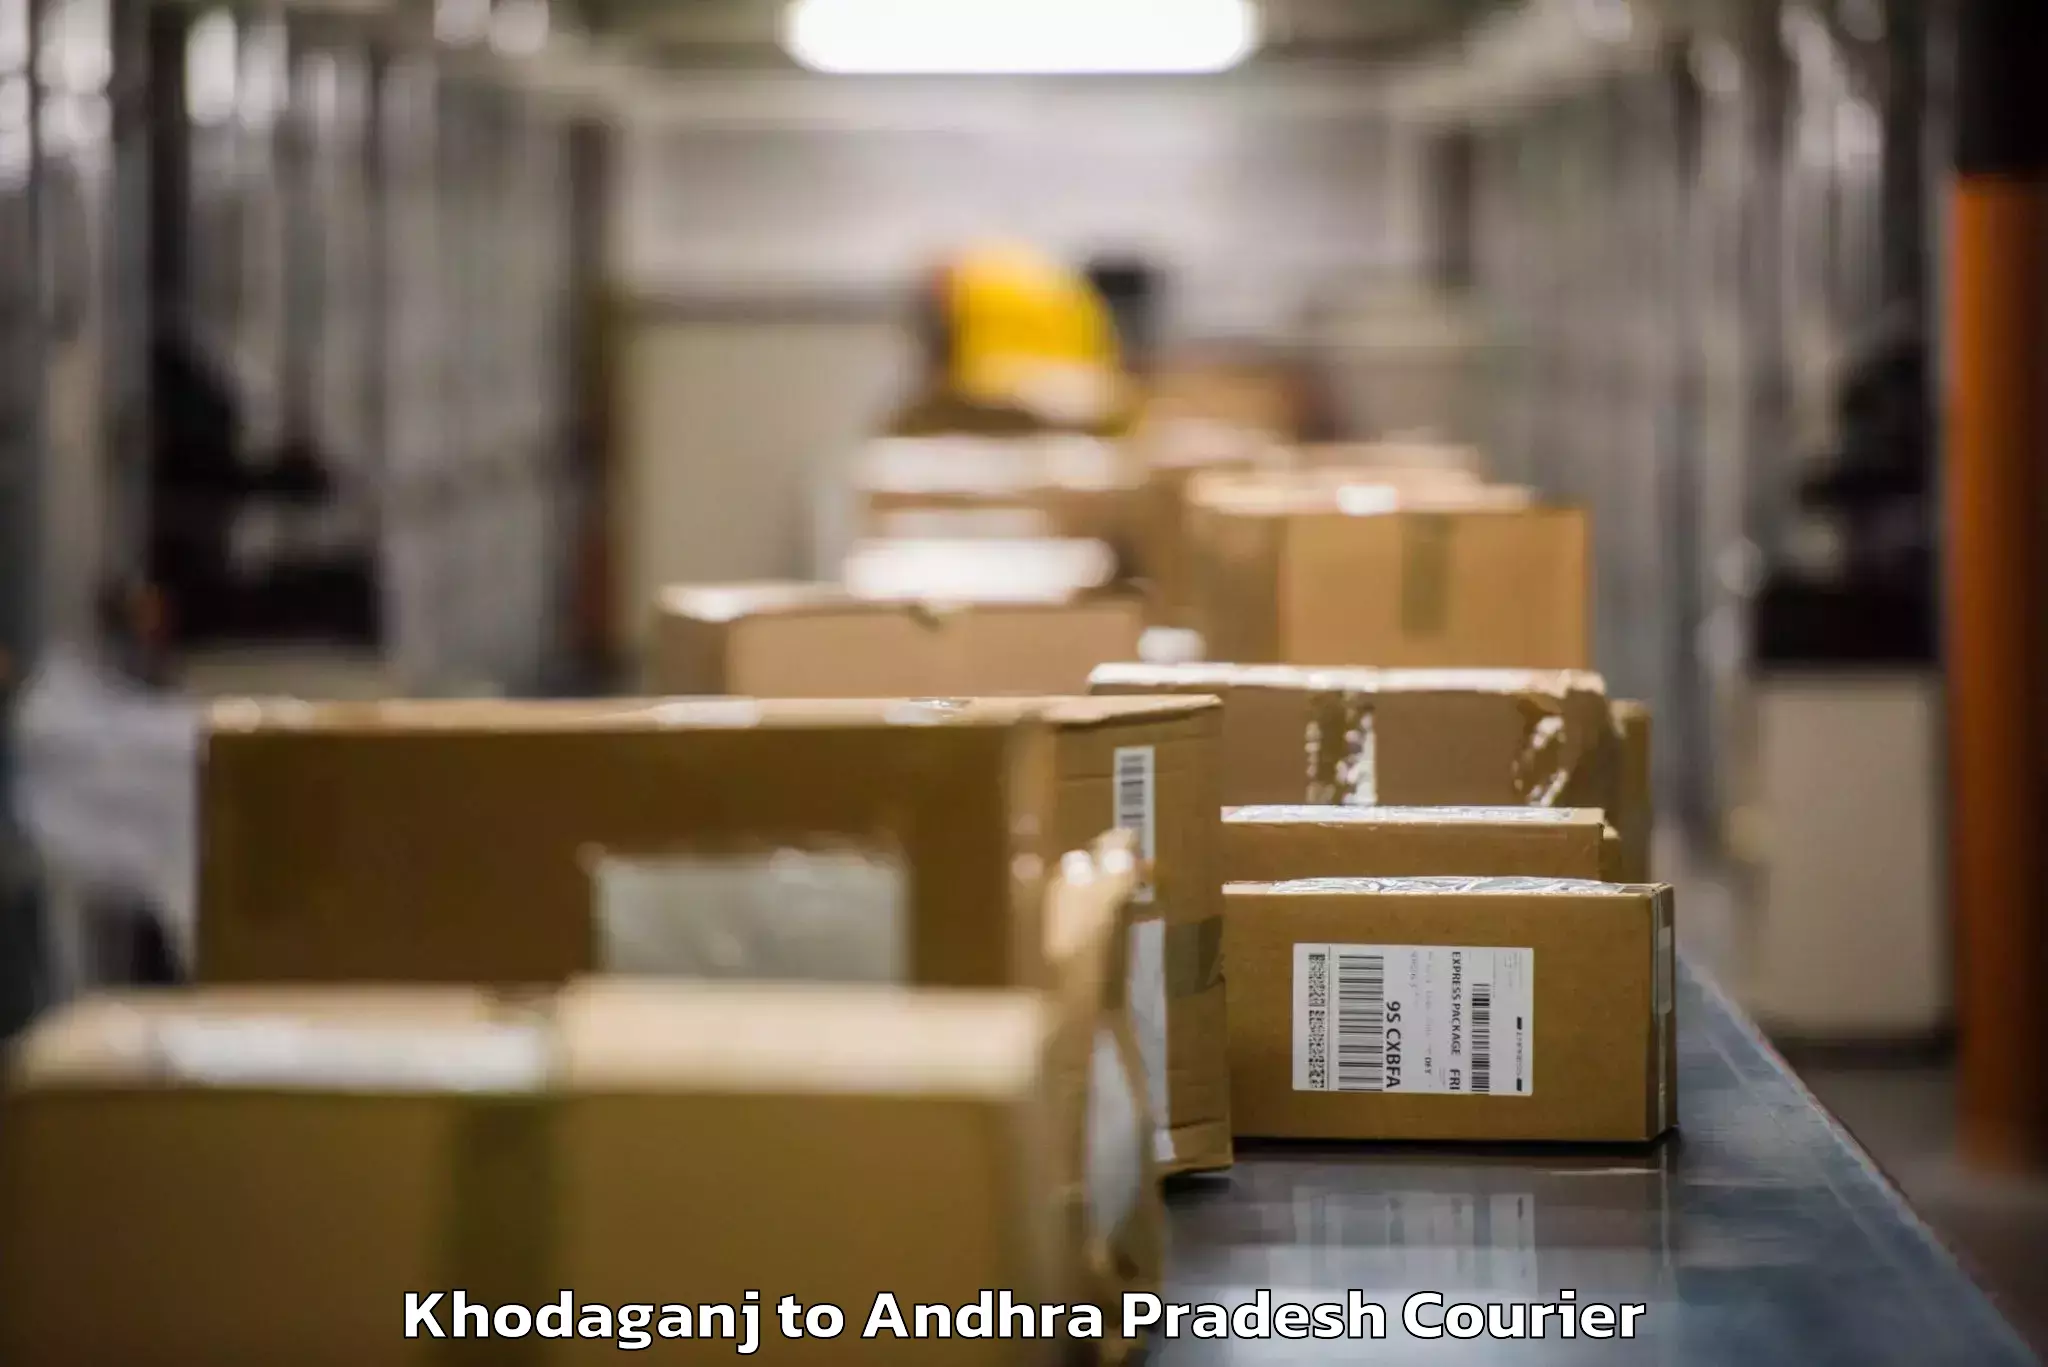 Luggage transport company Khodaganj to Vempalli